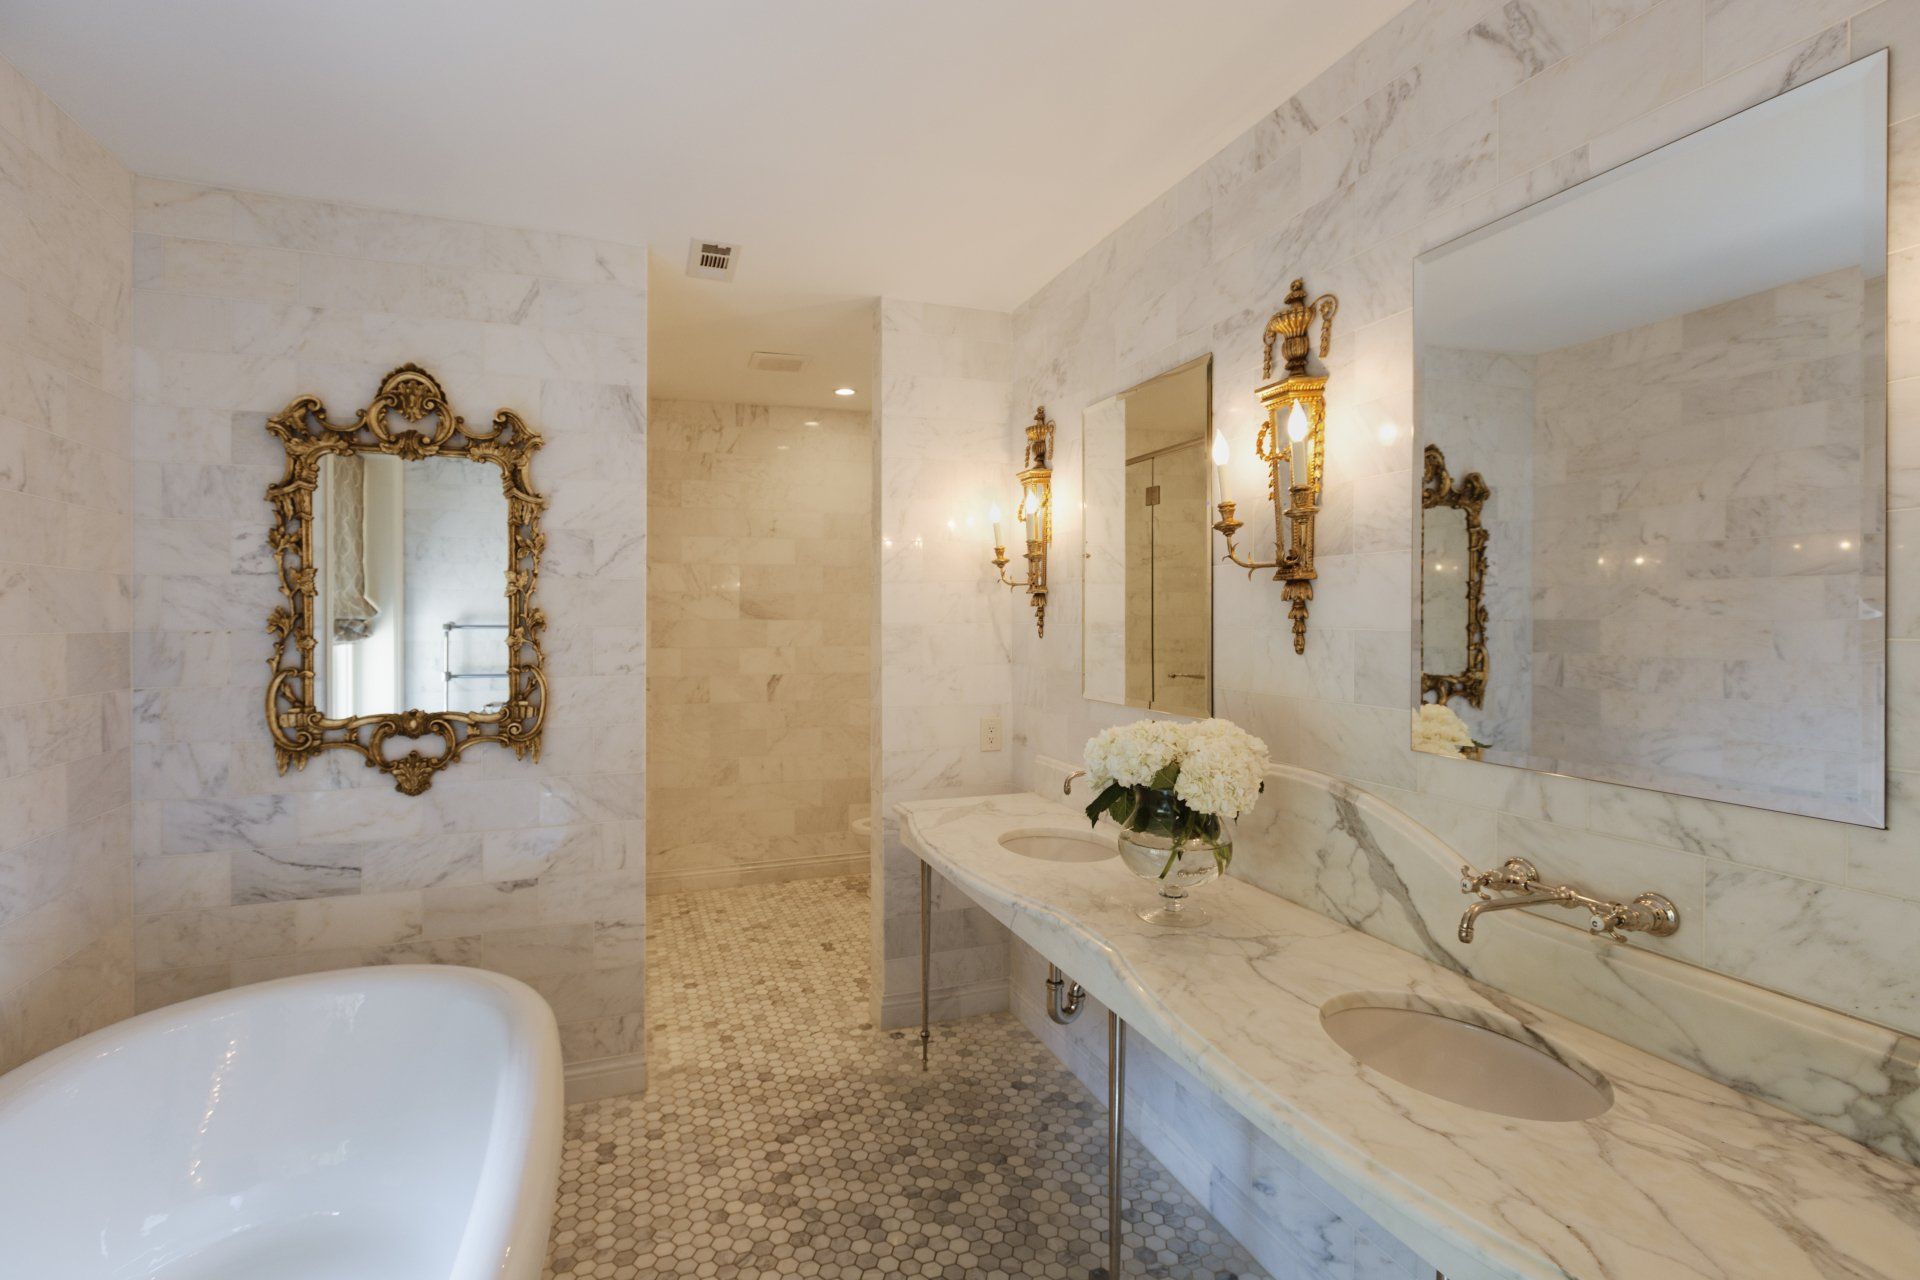 Salle de bains en marbre